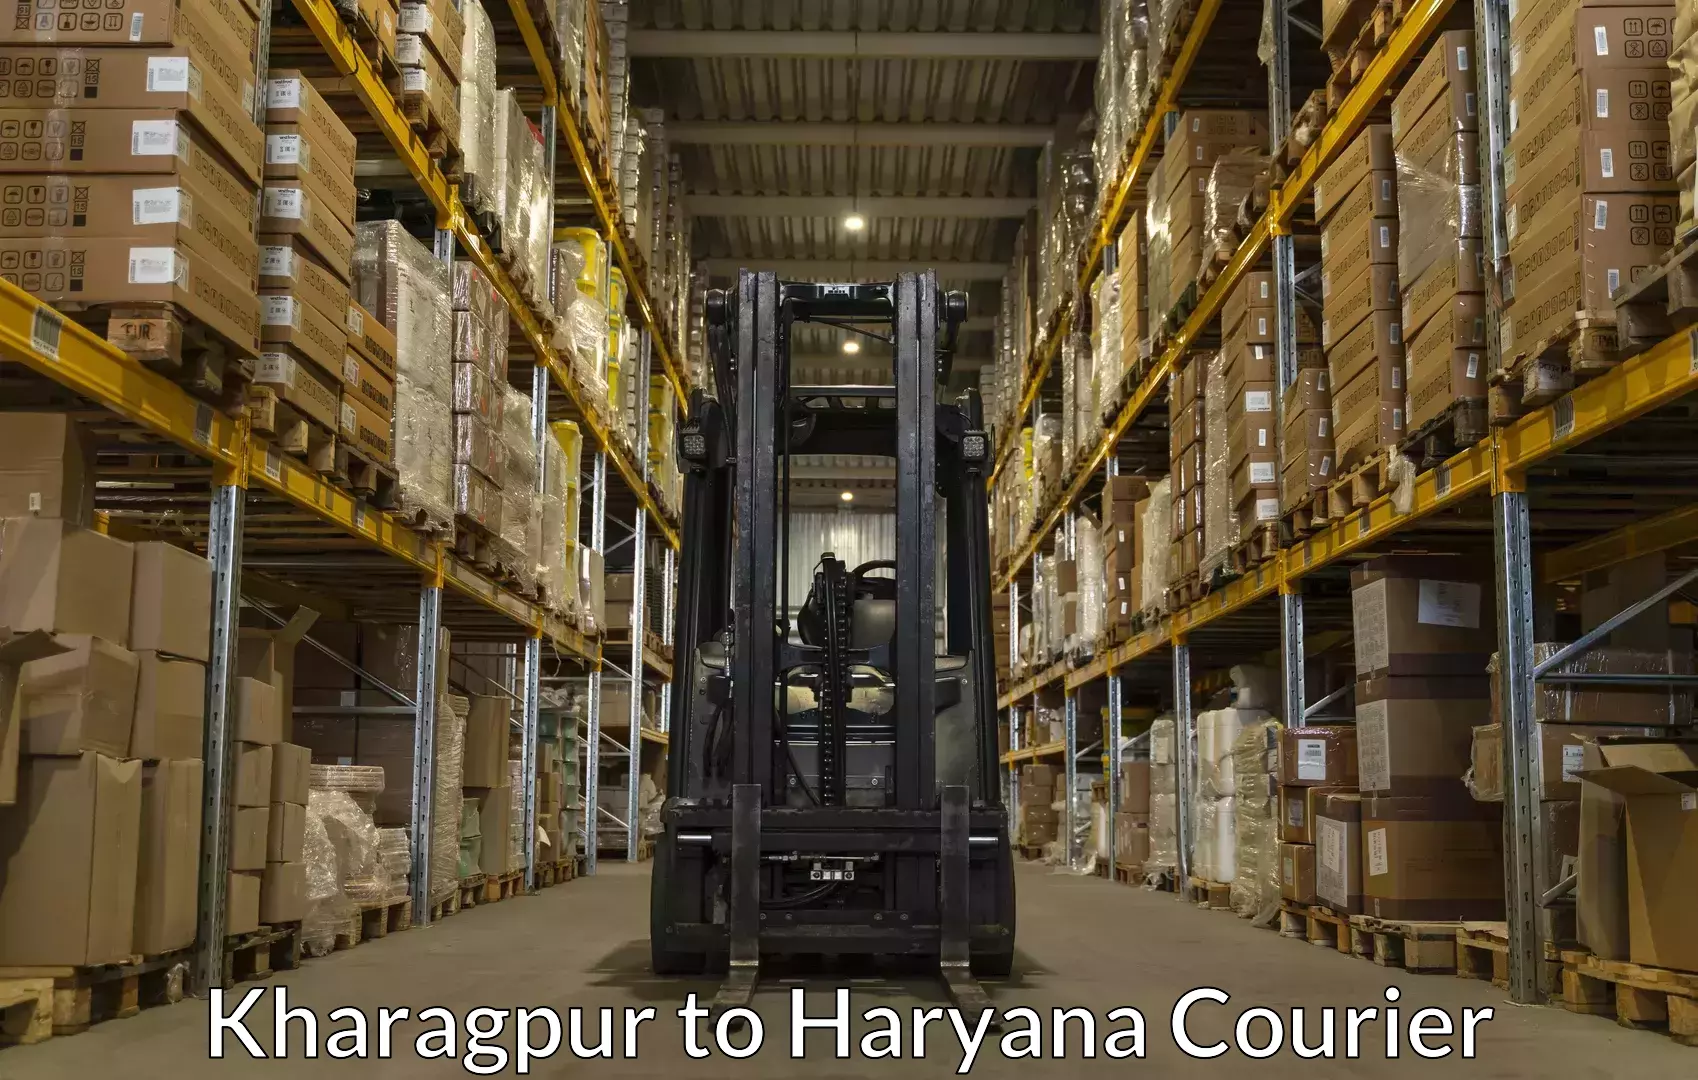 Baggage delivery optimization Kharagpur to Panchkula